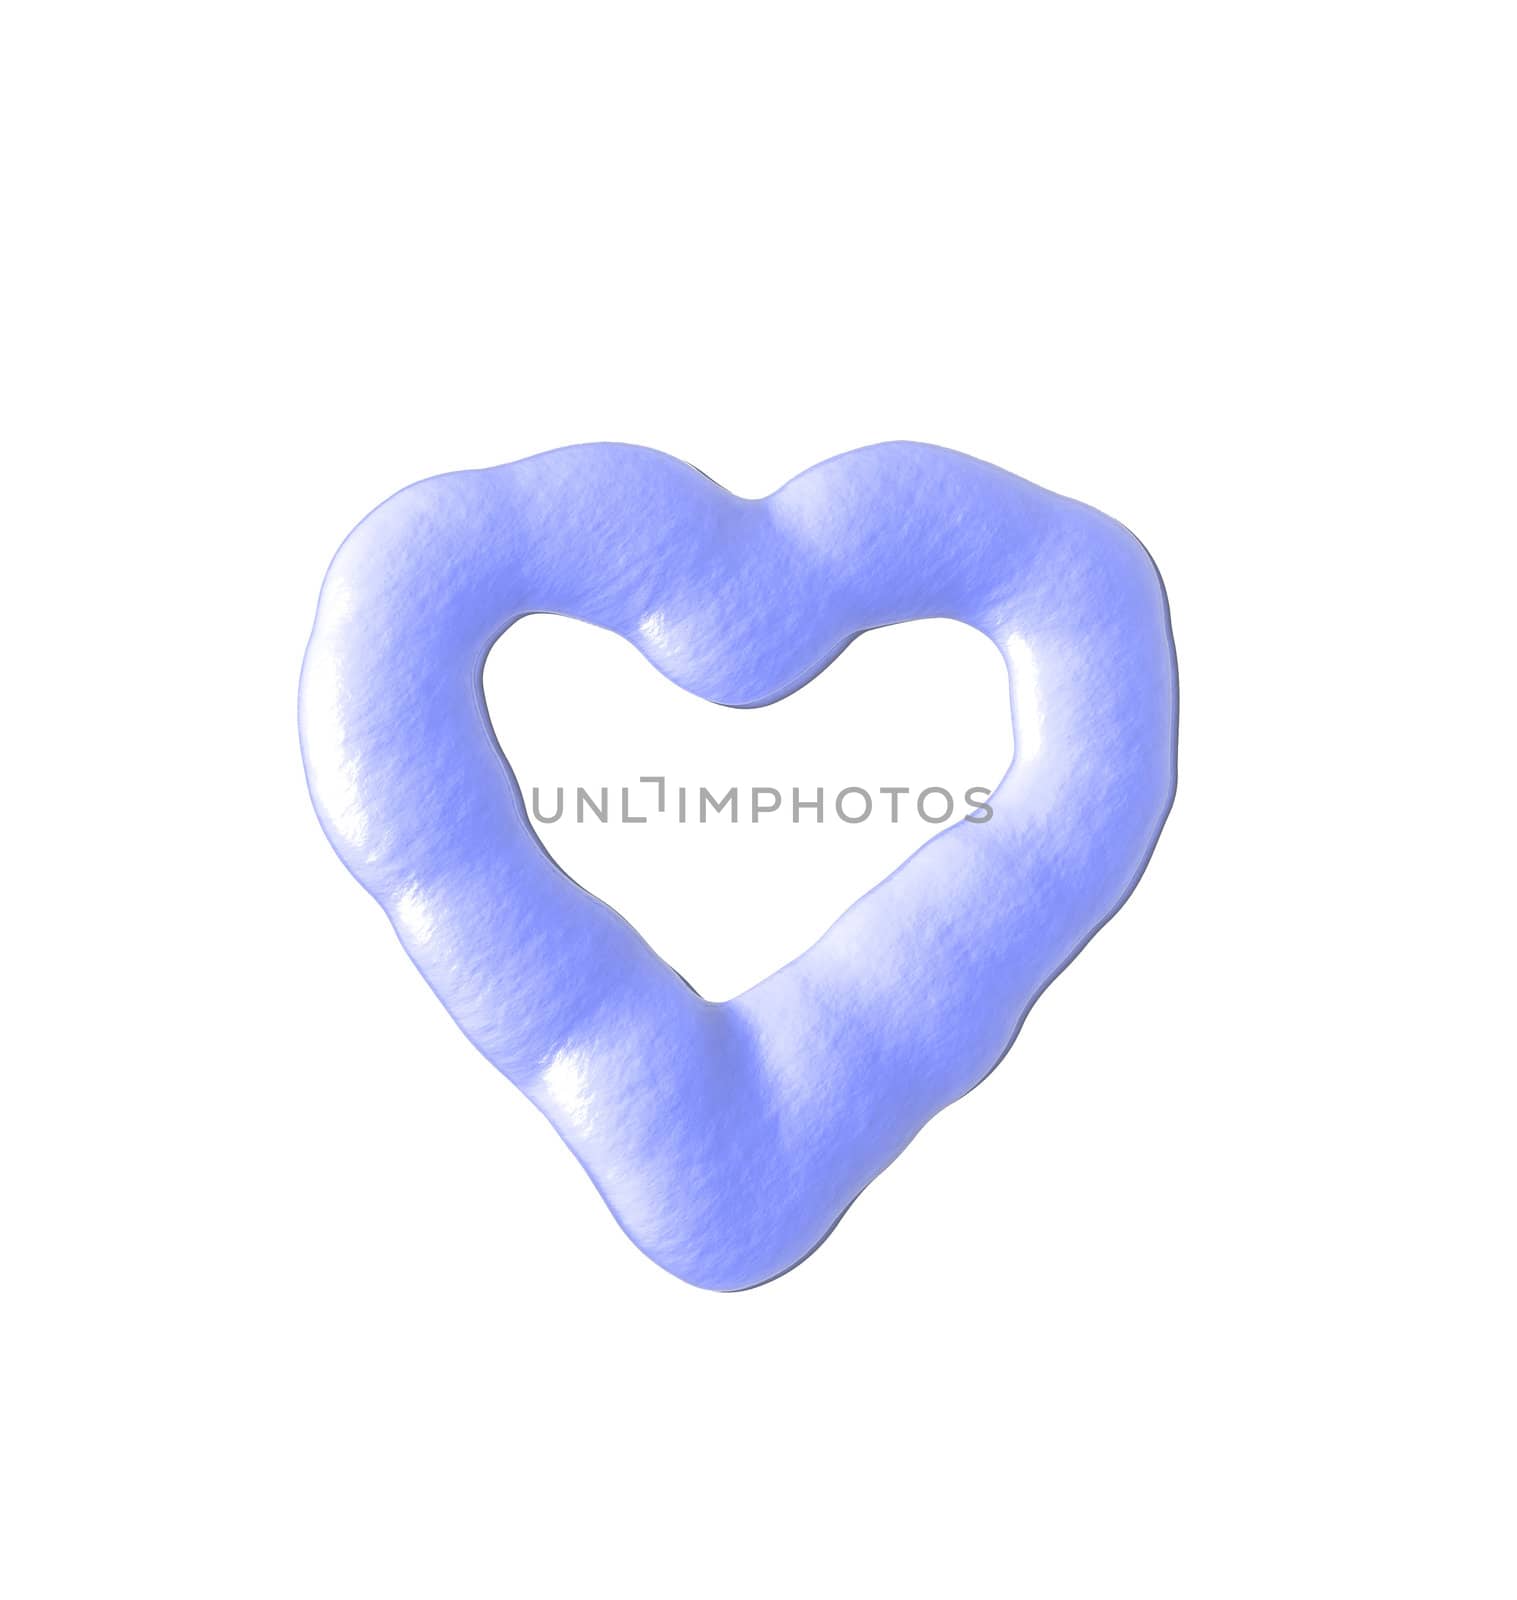 liquid heart on white background - 3d illustration